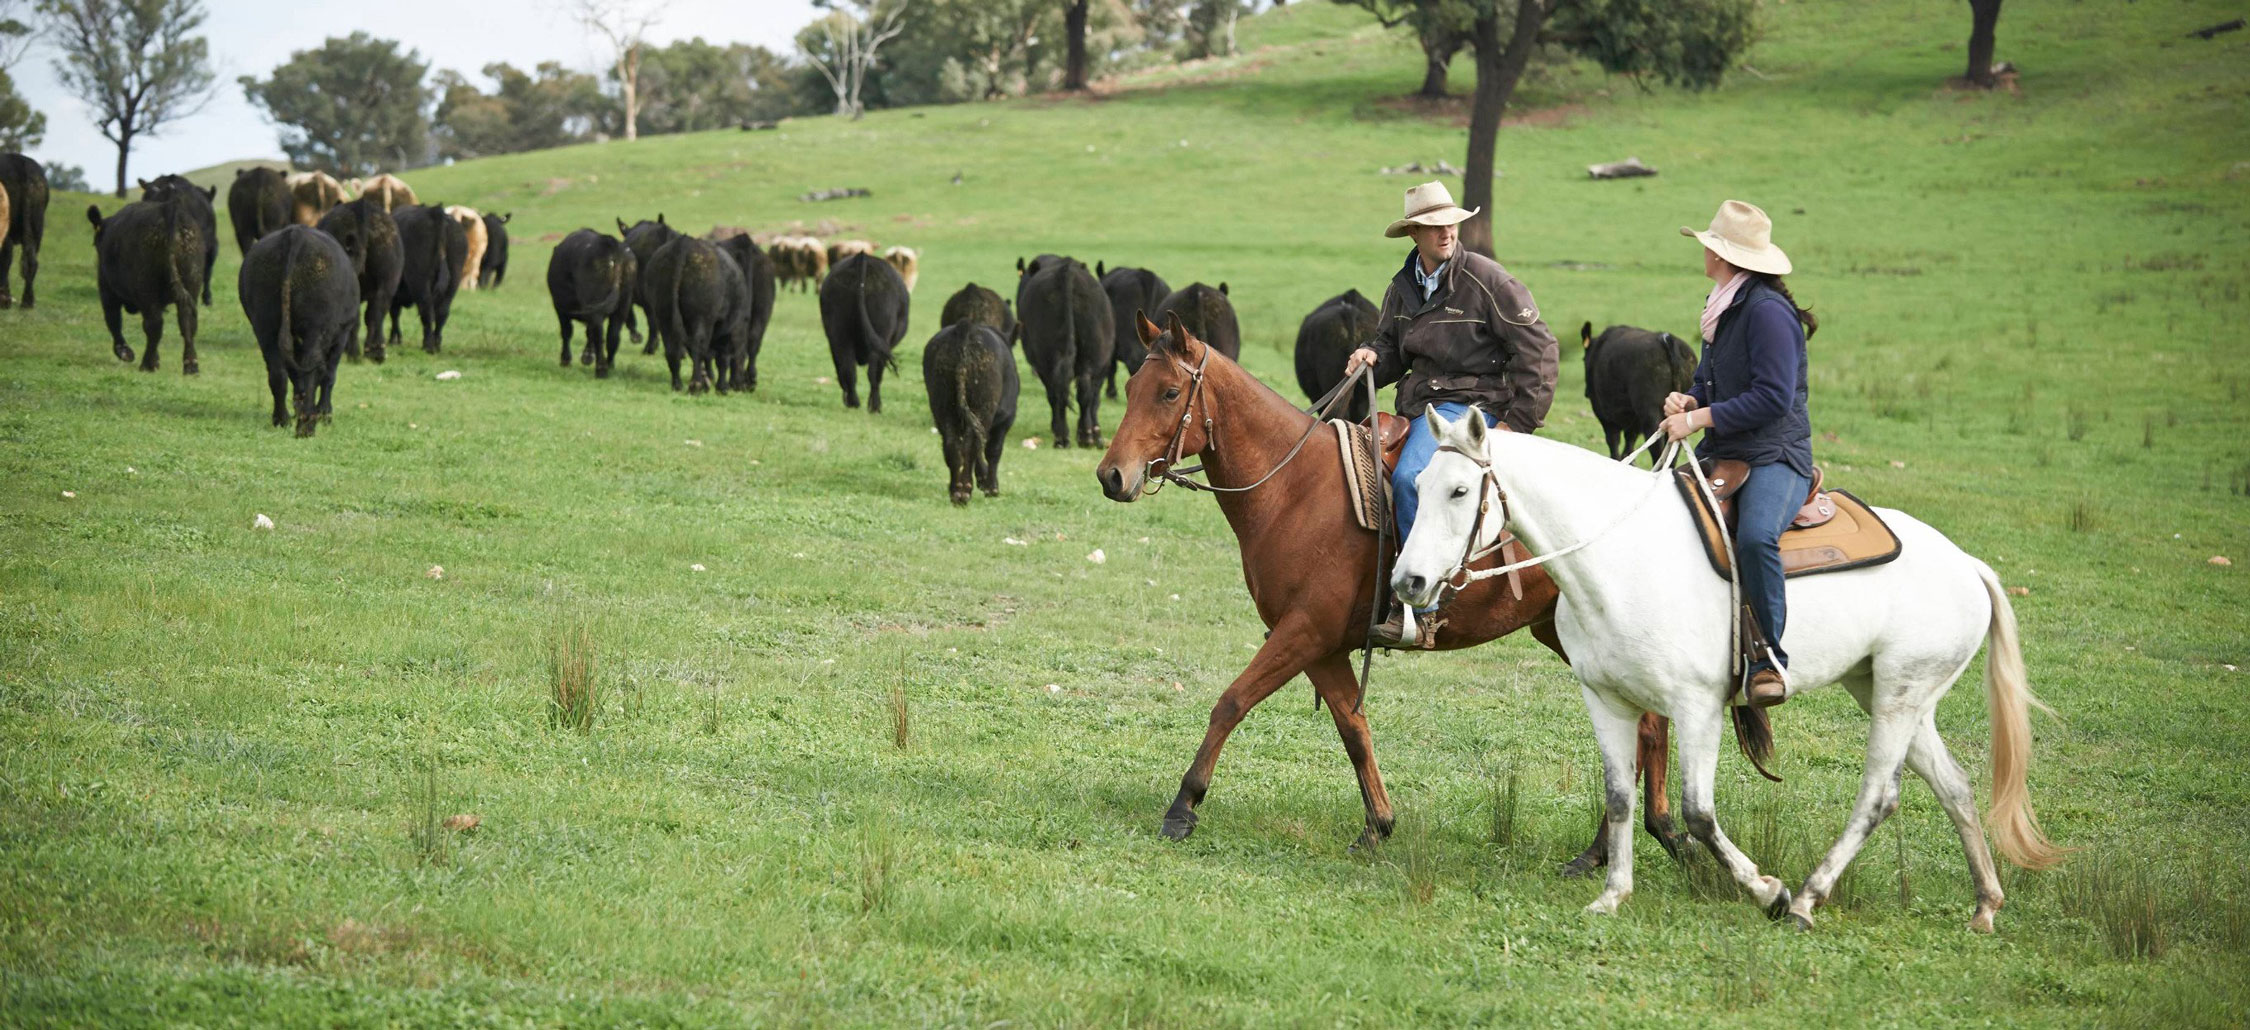 Aussie producers nurturing cattle